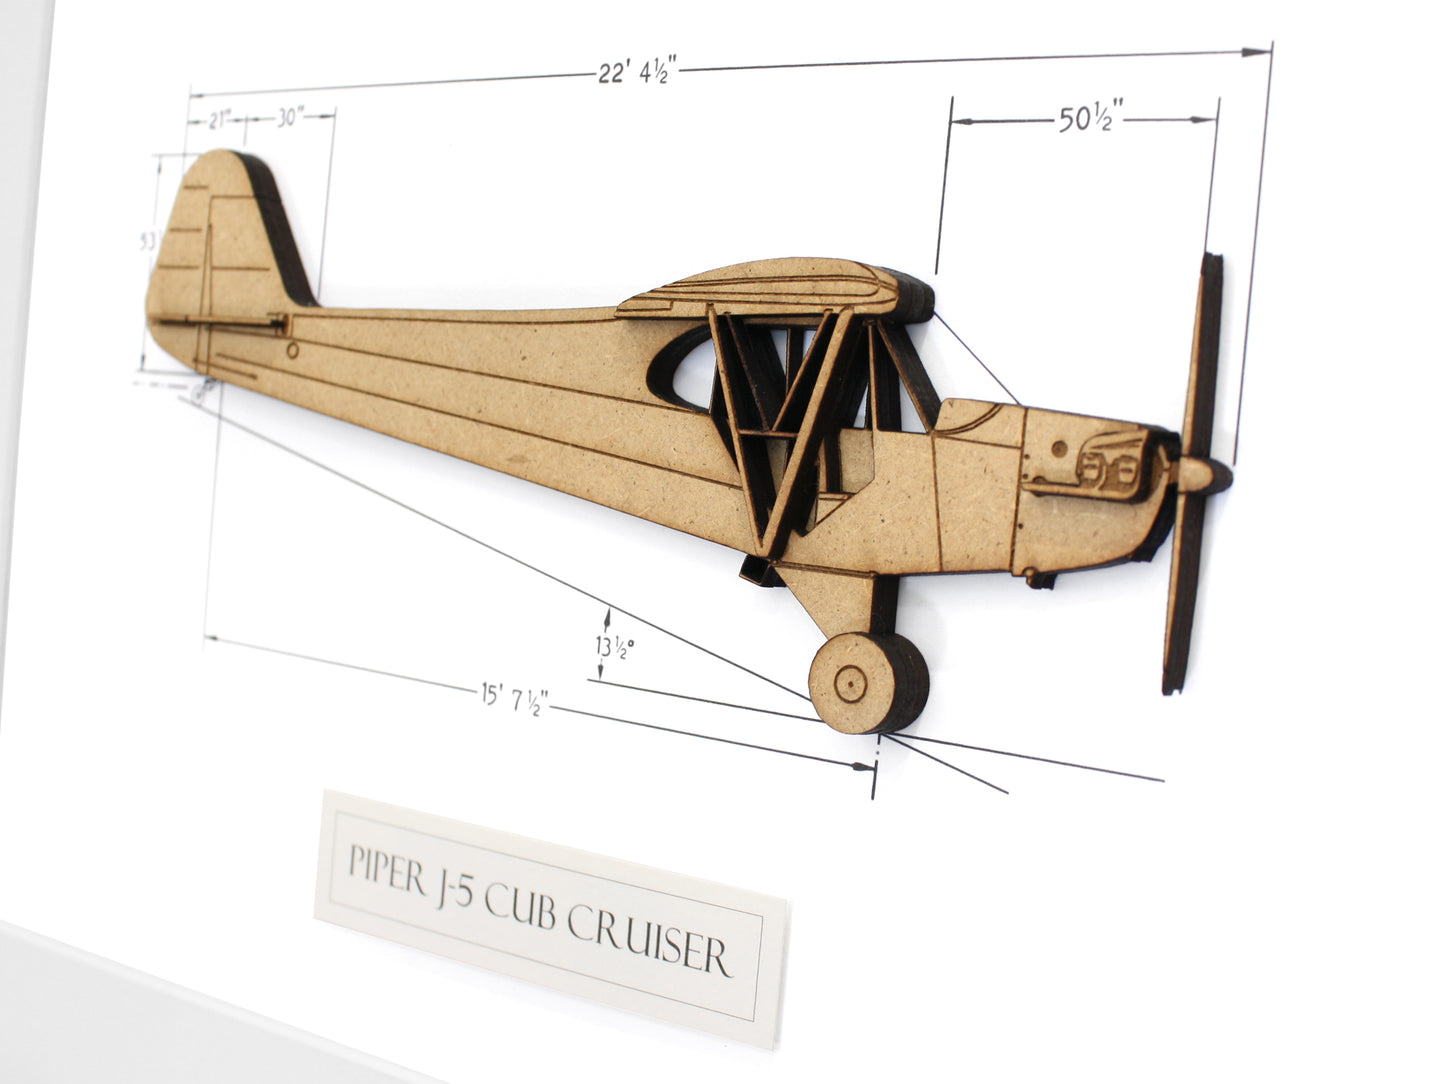 Piper J5 Cruiser blueprint art